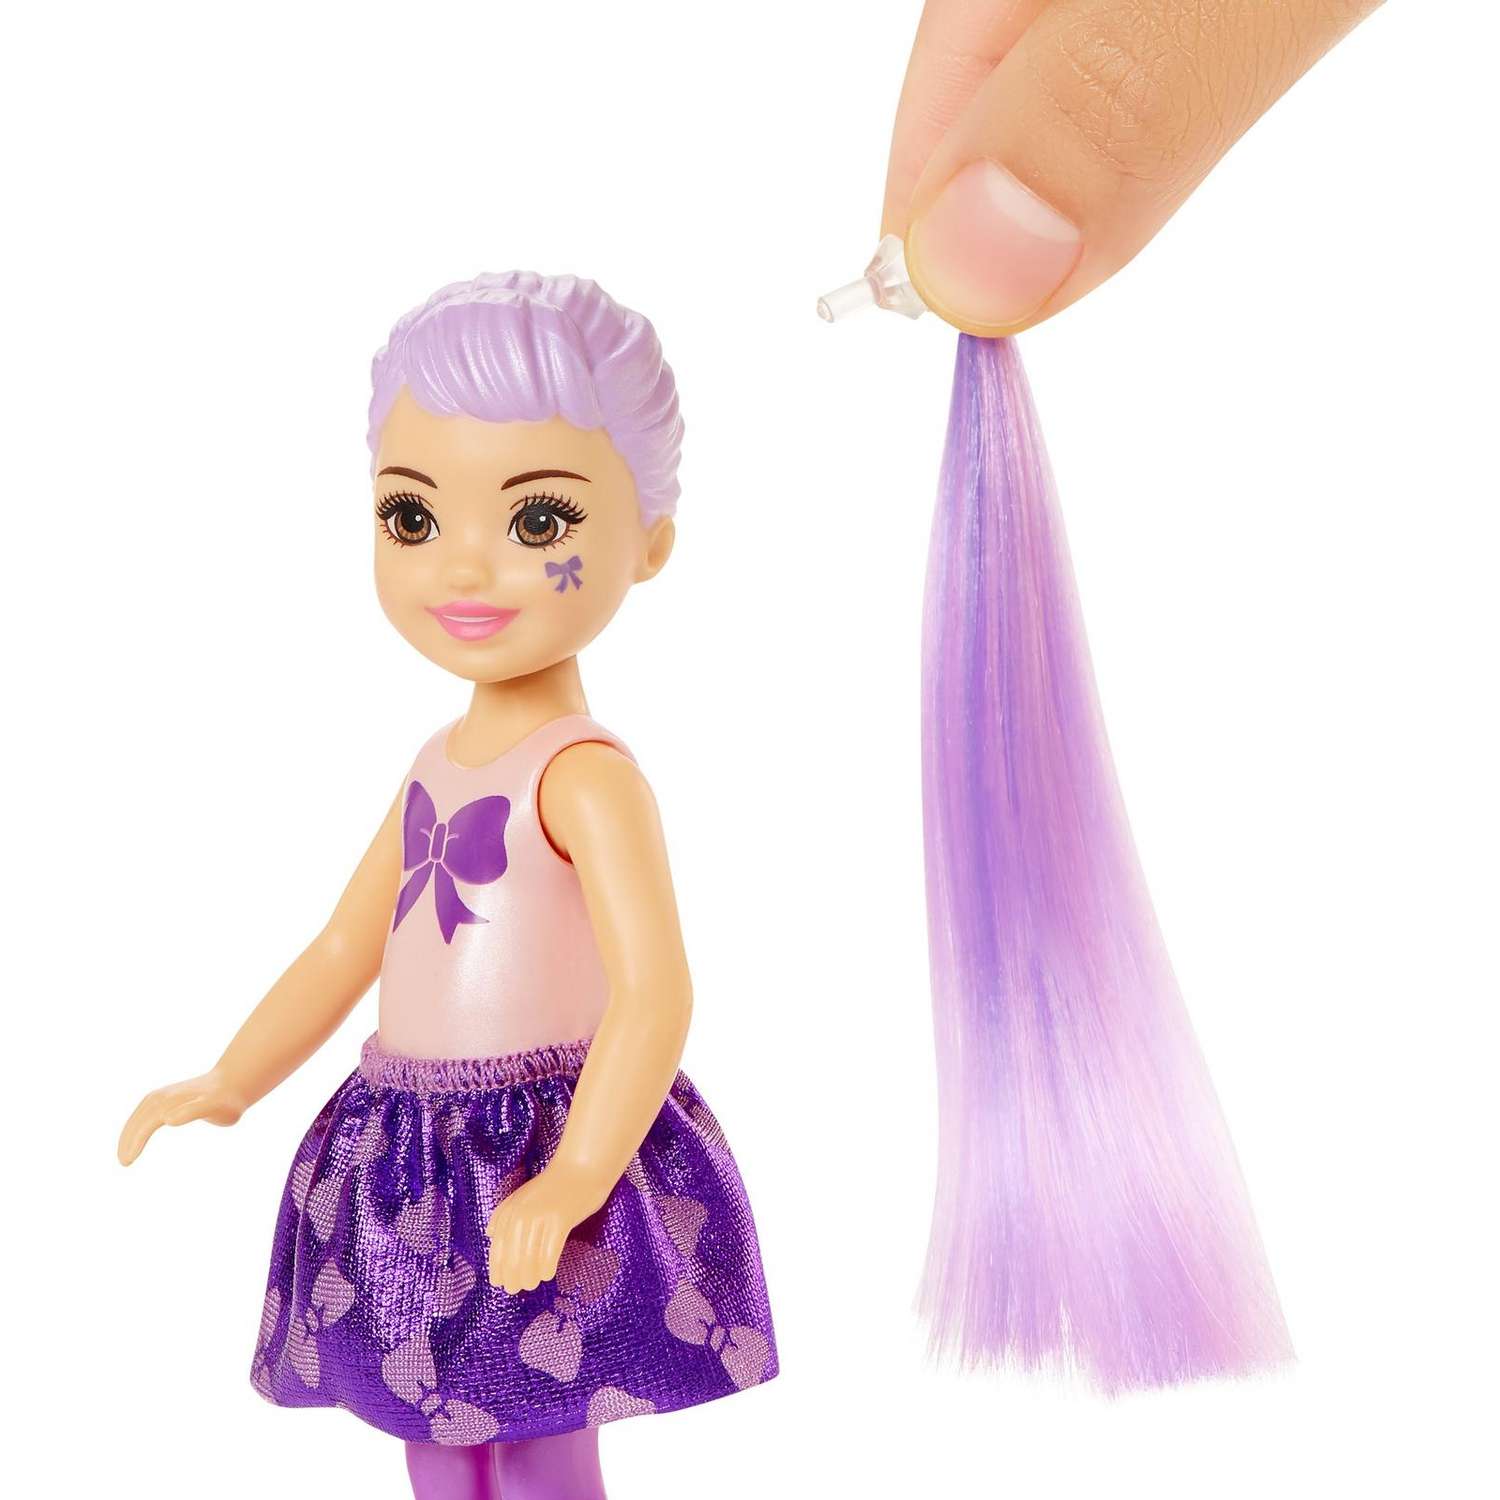 Набор Barbie Челси В1 кукла +аксессуары в непрозрачной упаковке (Сюрприз) GWC59 GTT23 - фото 3